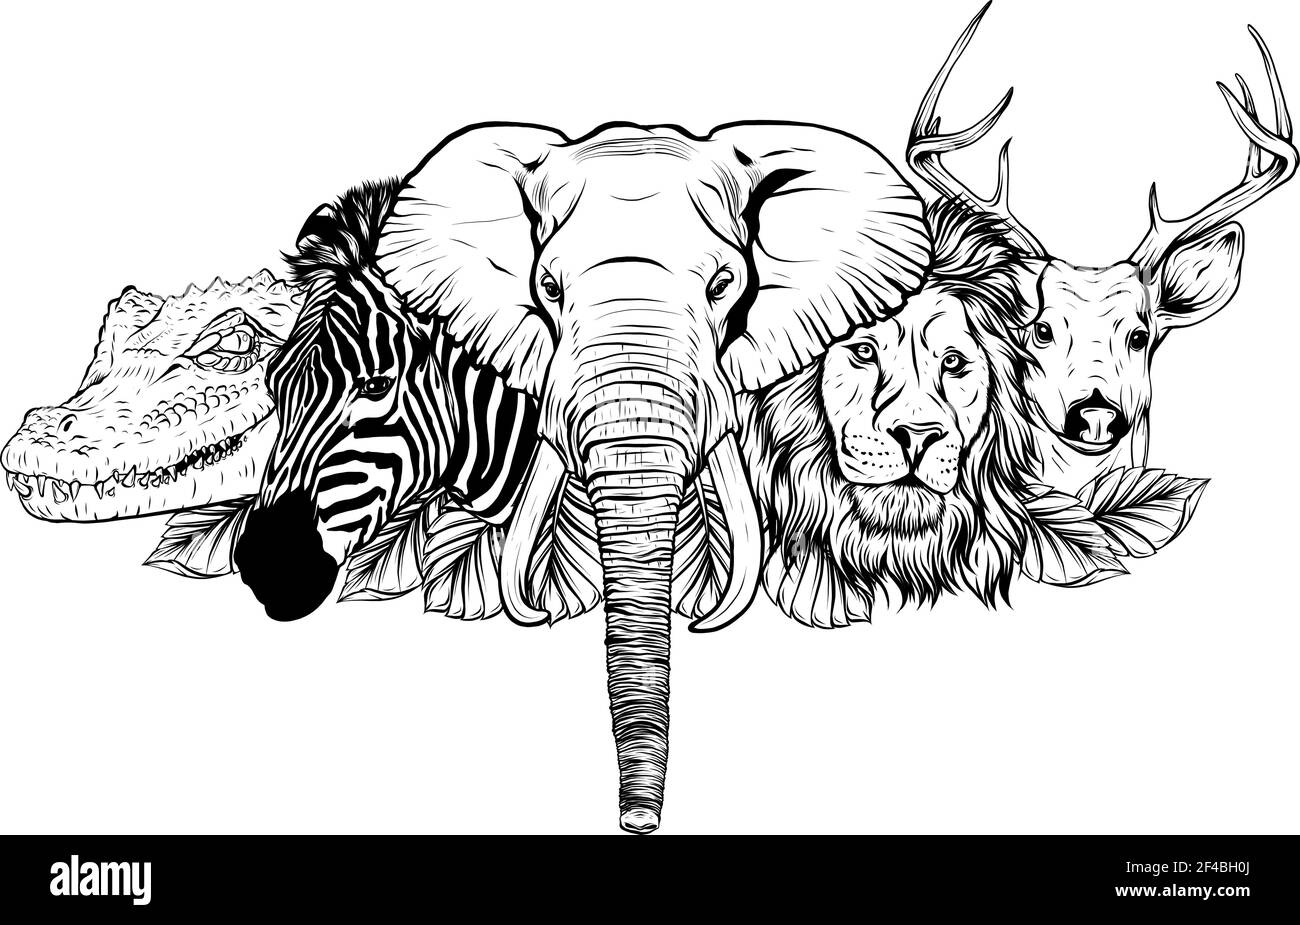 Dibuja en blanco y negro de Cartoon animales salvajes africanos sobre fondo blanco Ilustración del Vector